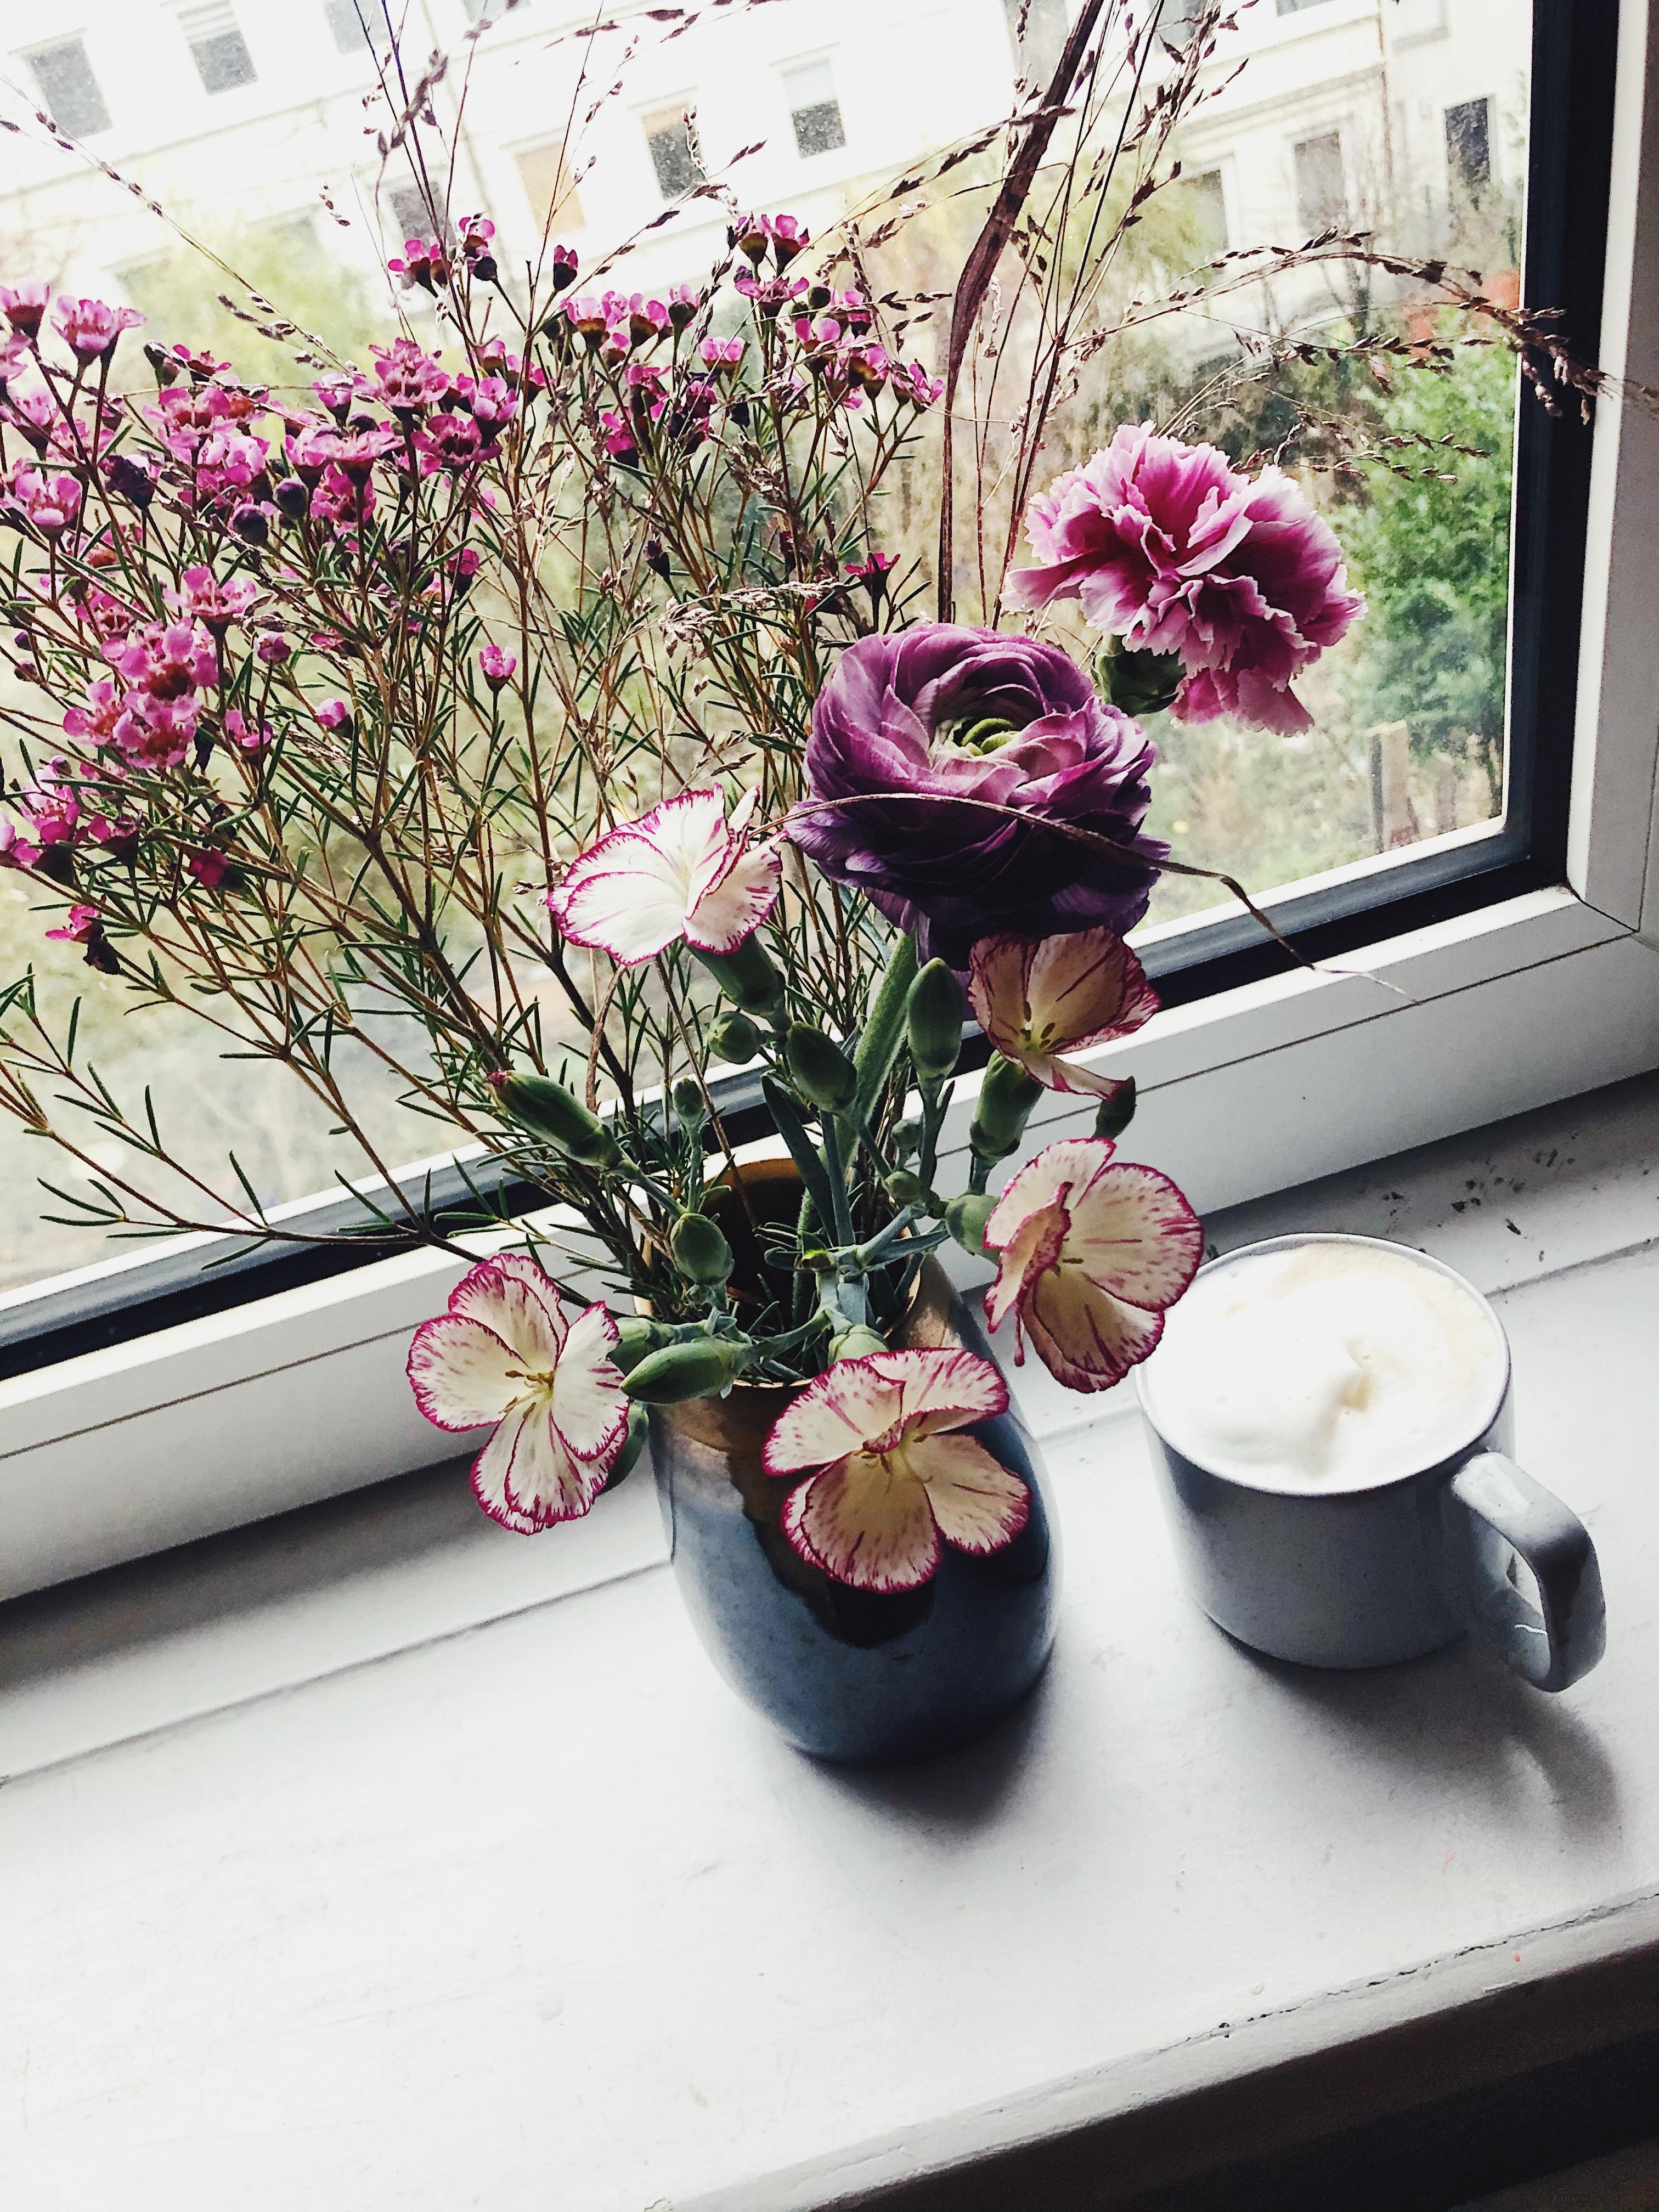 Gegen das Hamburger Grau mit Blumen anfunkeln...
#Blumen #Flowers #Deko #Kaffee #Fensterbank